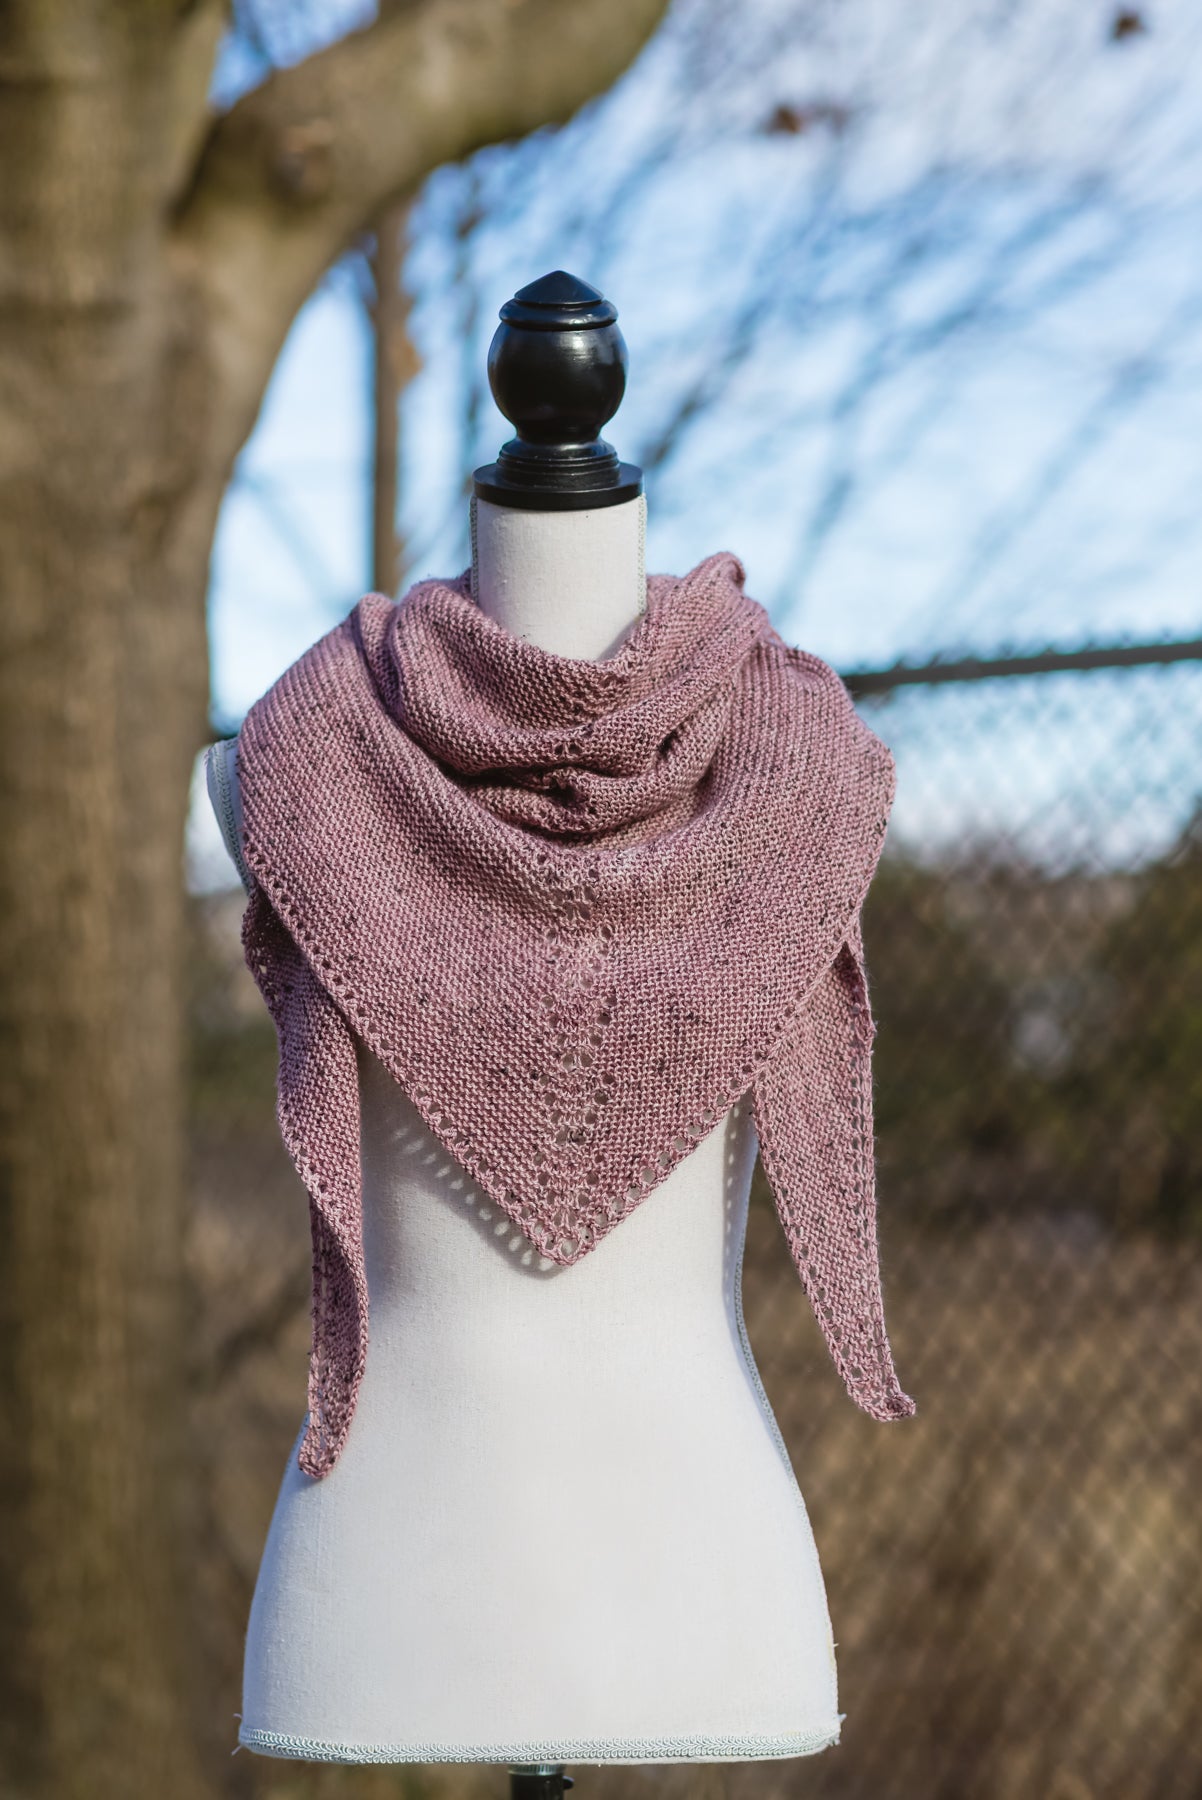 traingle shawl knit from pattern